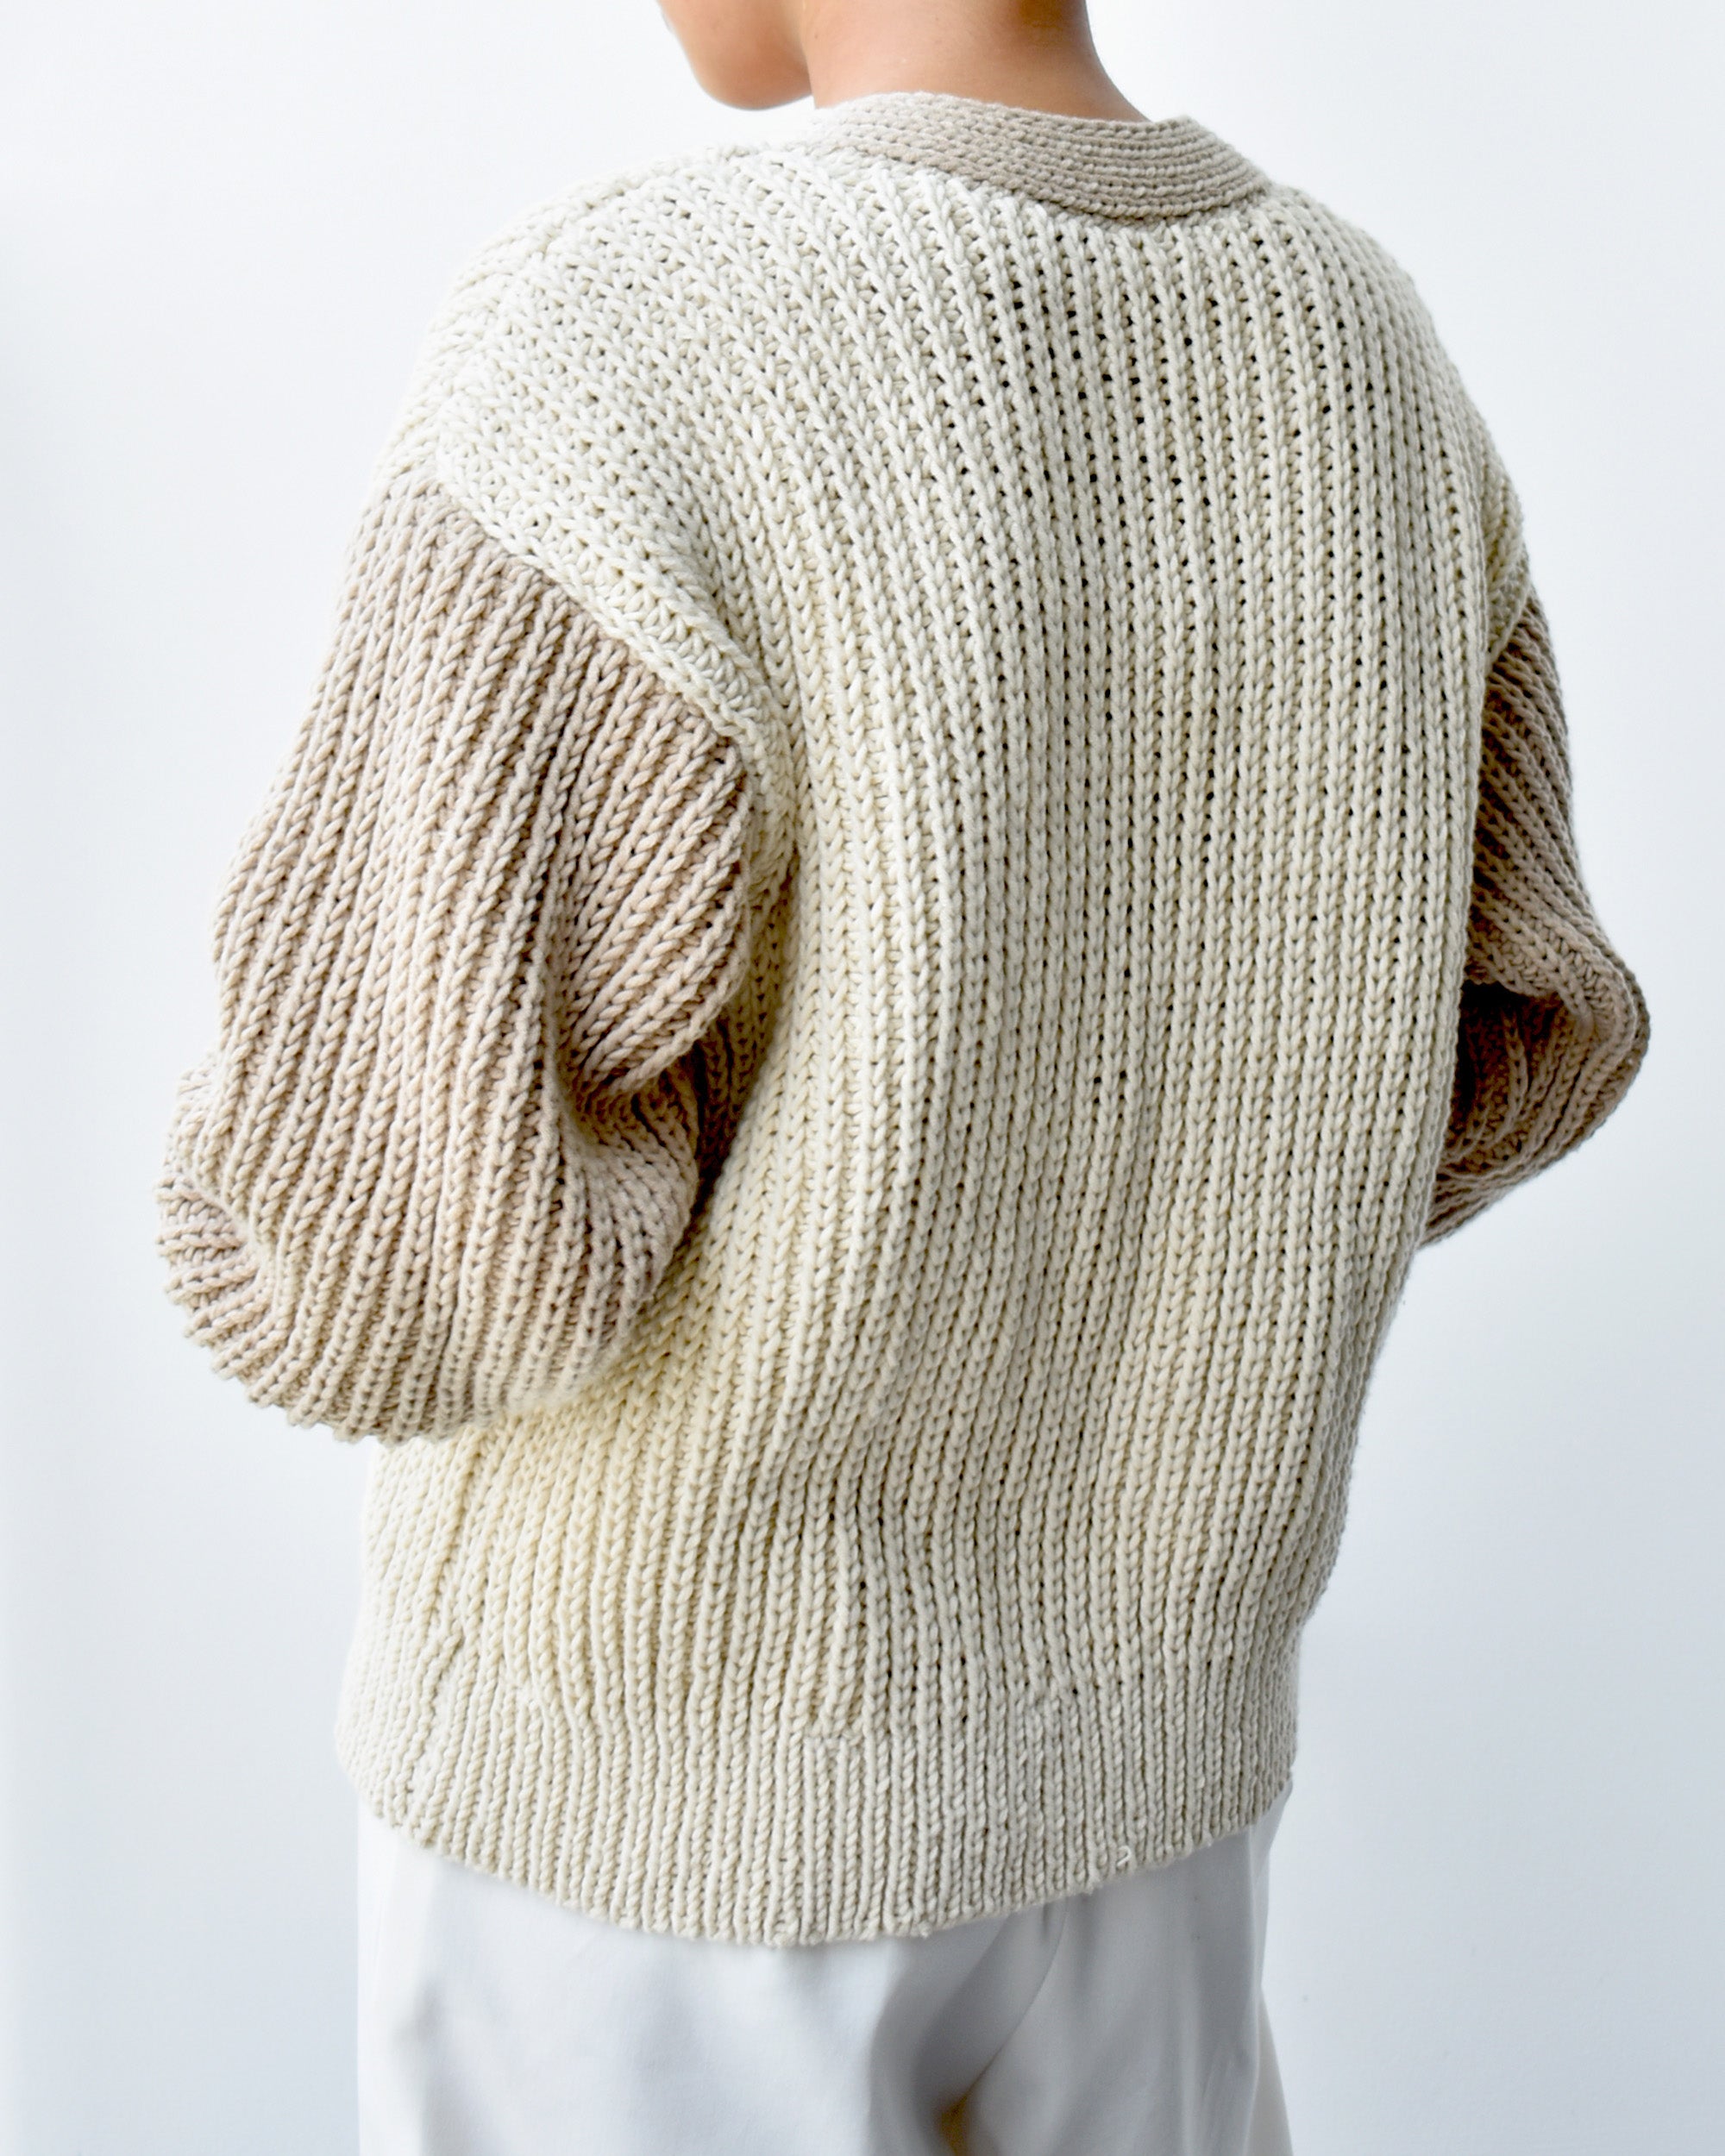 Cardigan No.2 | Classic knitting cardigan pattern